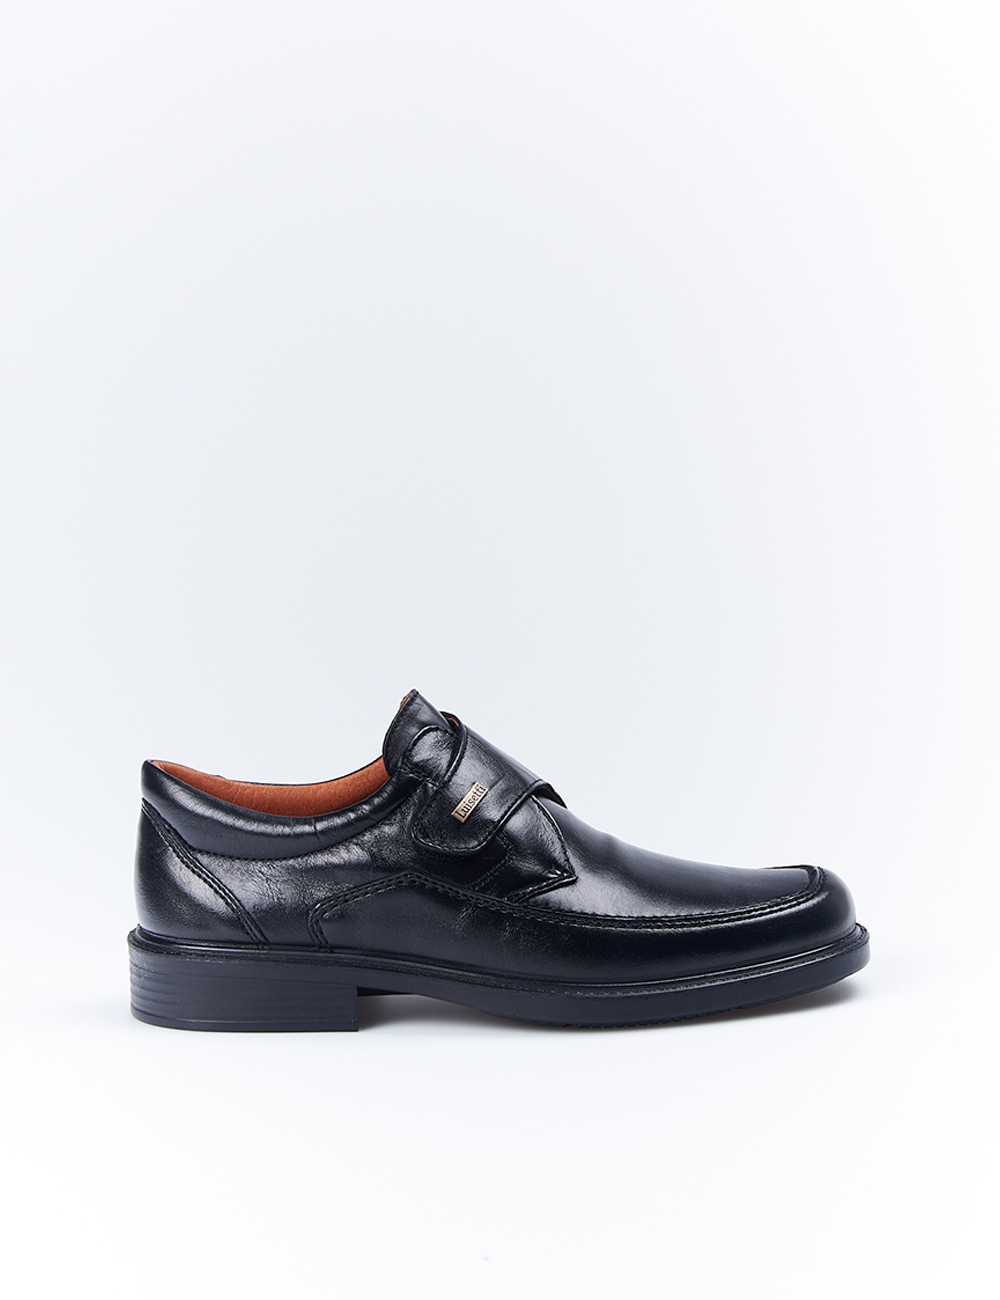 Songrong Sin 16pcs de Lazada Multi Sized Plana del silicón del Zapato Cordones elásticos sin Corbata Cordones Color al Azar 